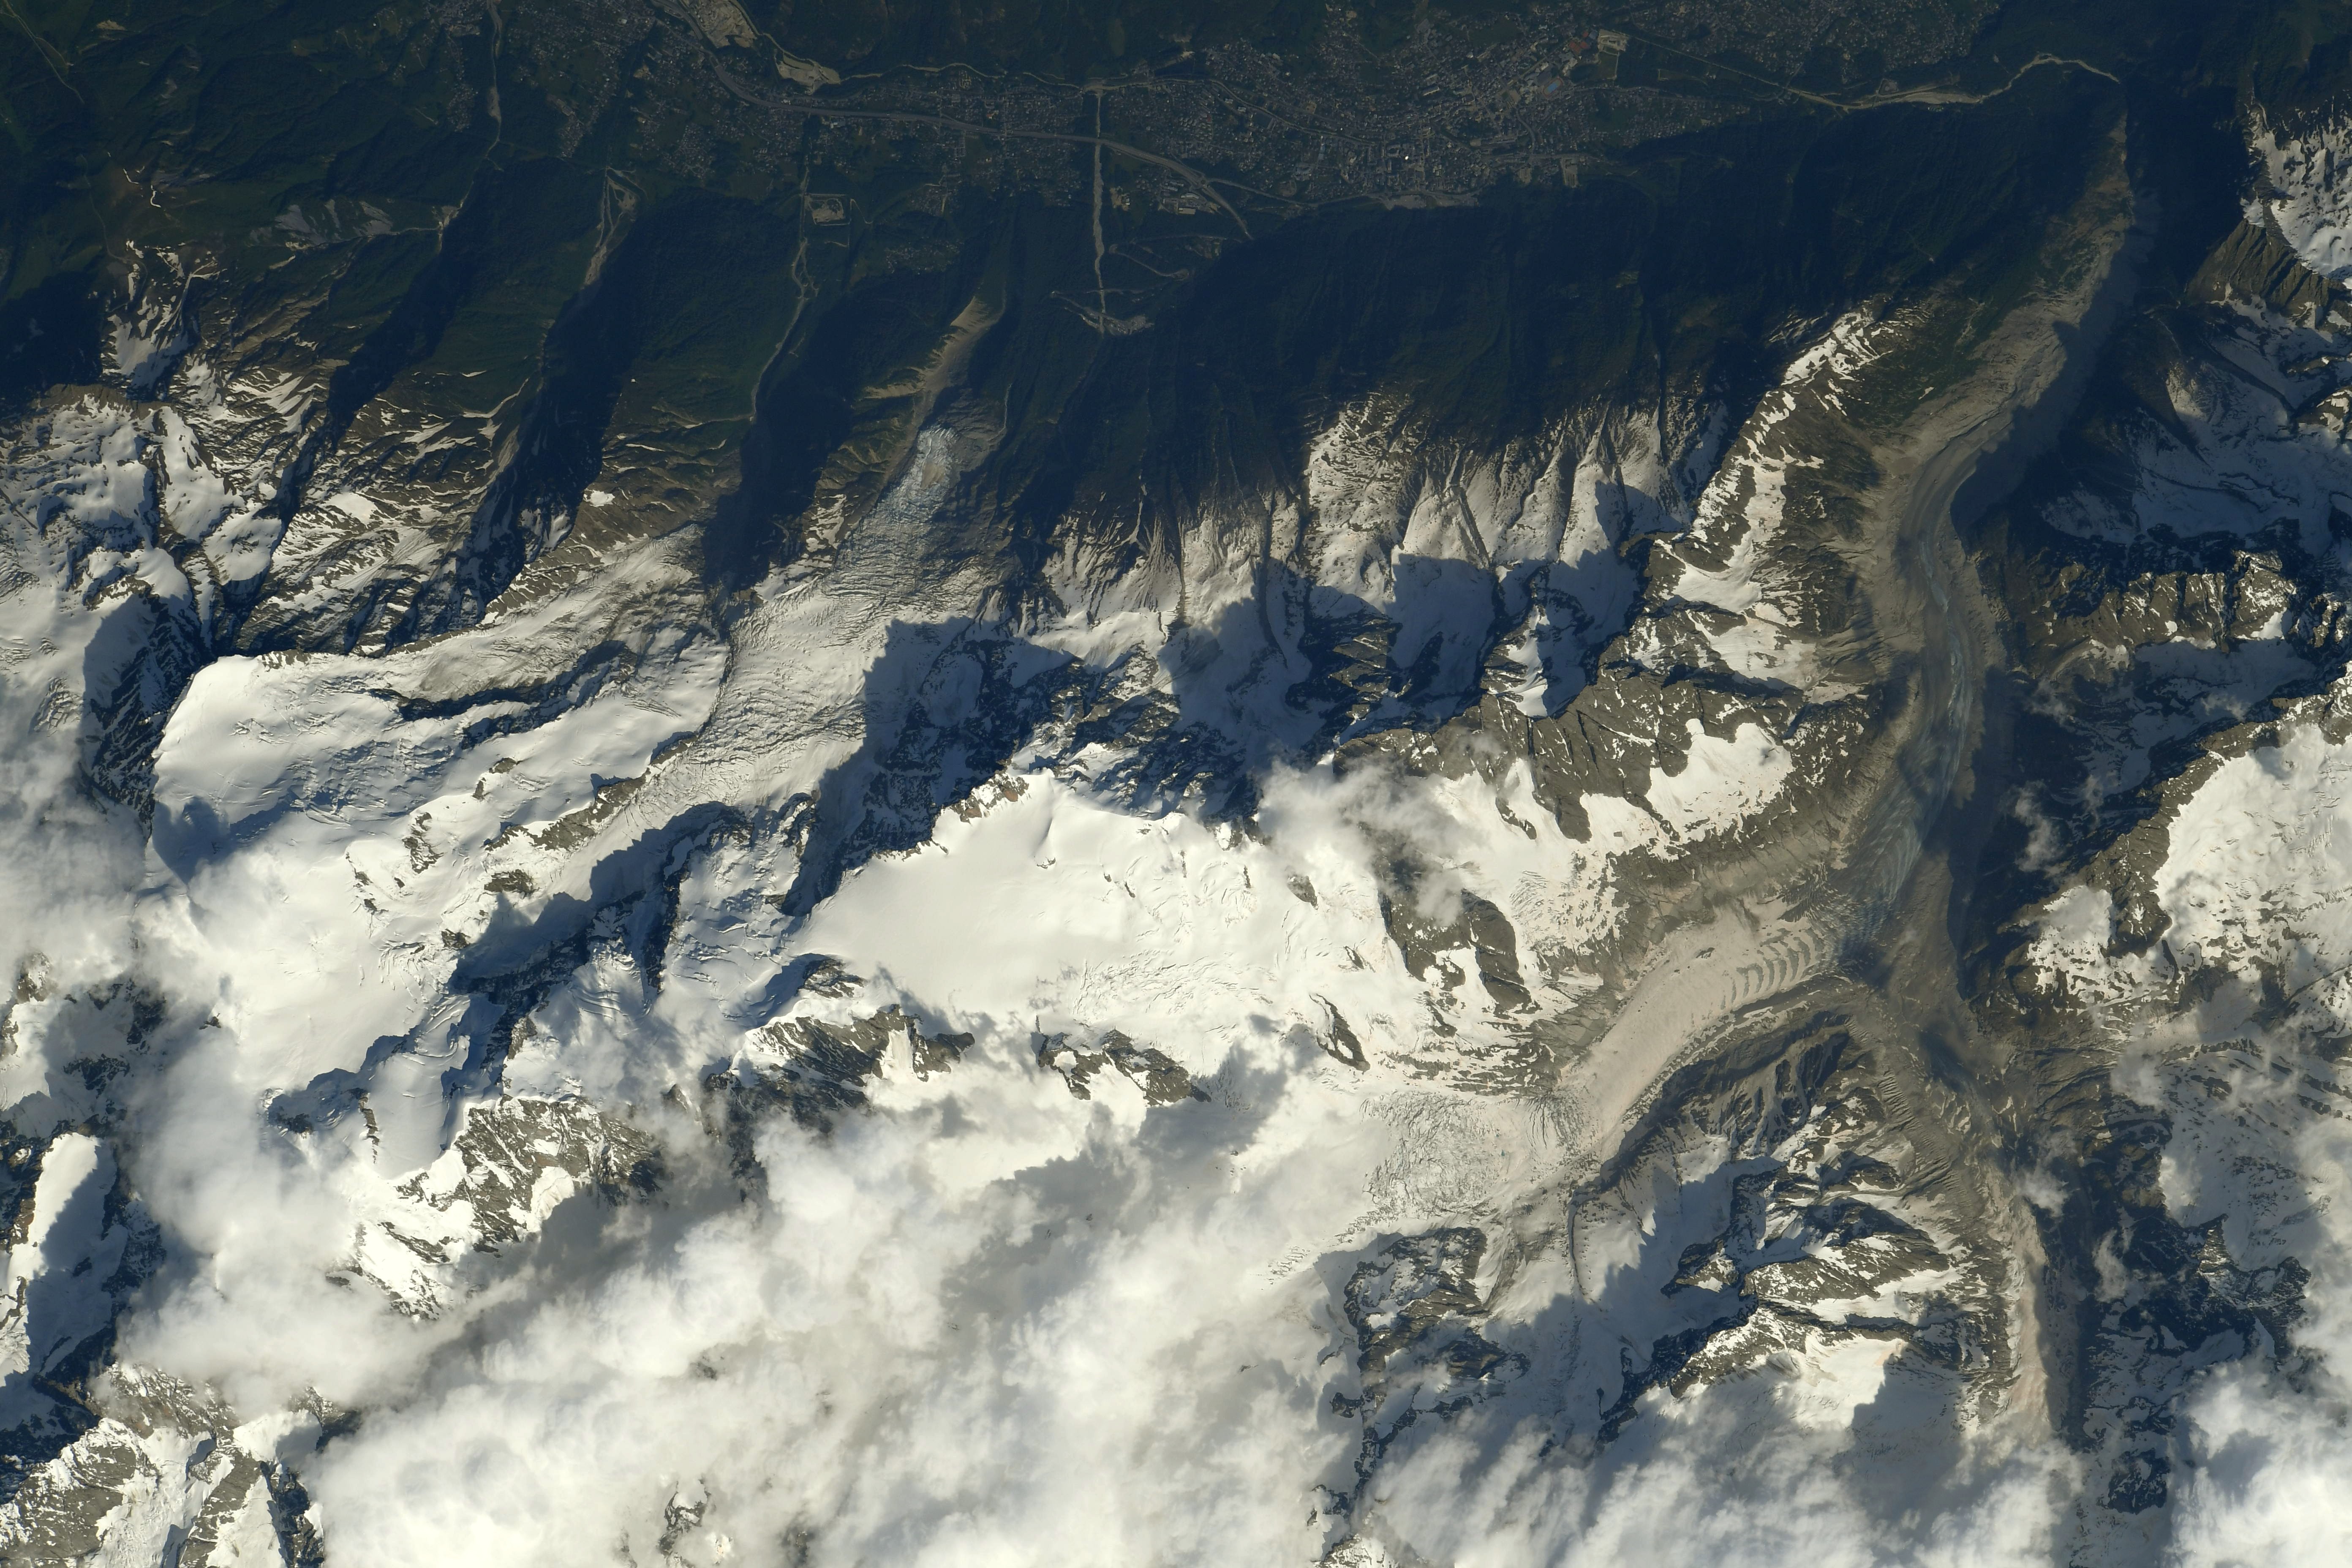 Le Mont Blanc, la Mer de Glace et la Vallée de Chamonix, photographiés par Thomas Pesquet, en juin 2021. © ESA/Nasa, Thomas Pesquet 